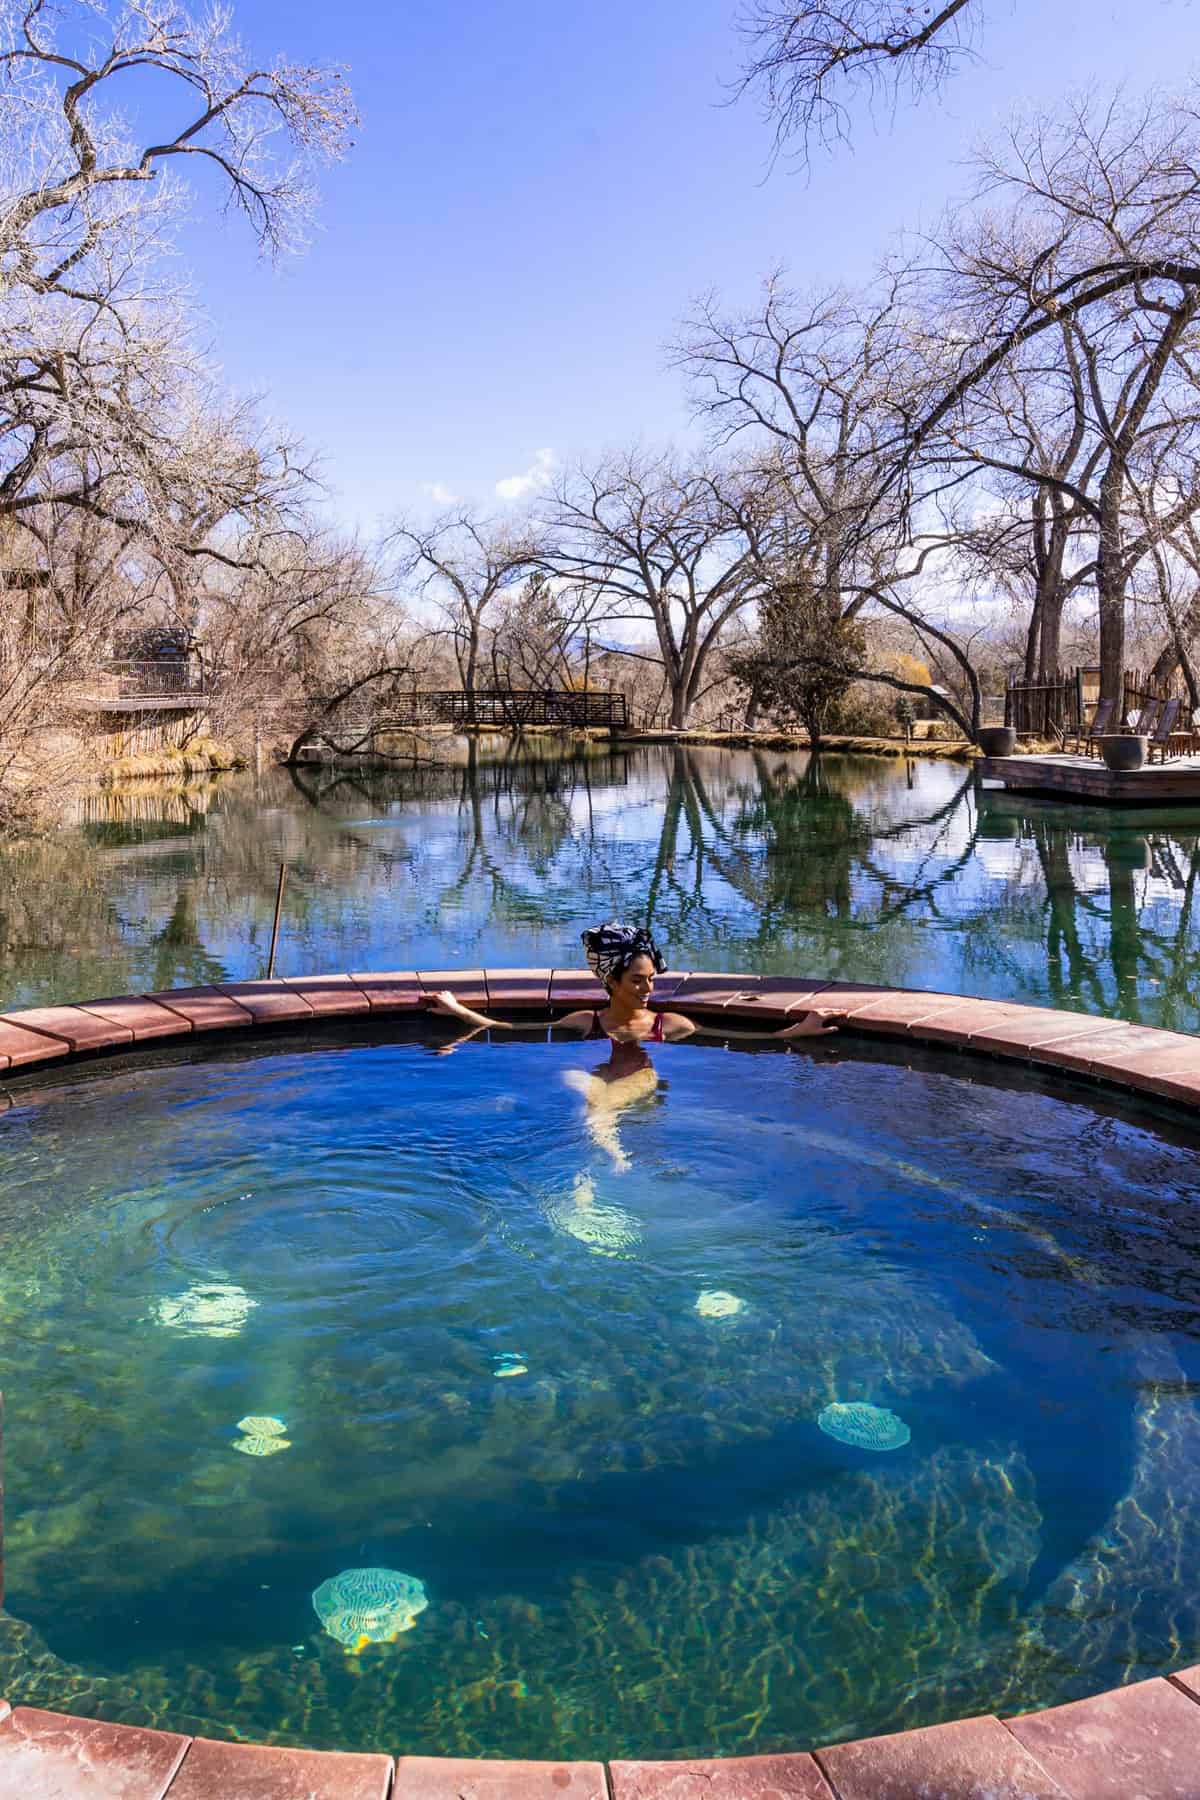 Hot Springs Near Santa Fe New Mexico